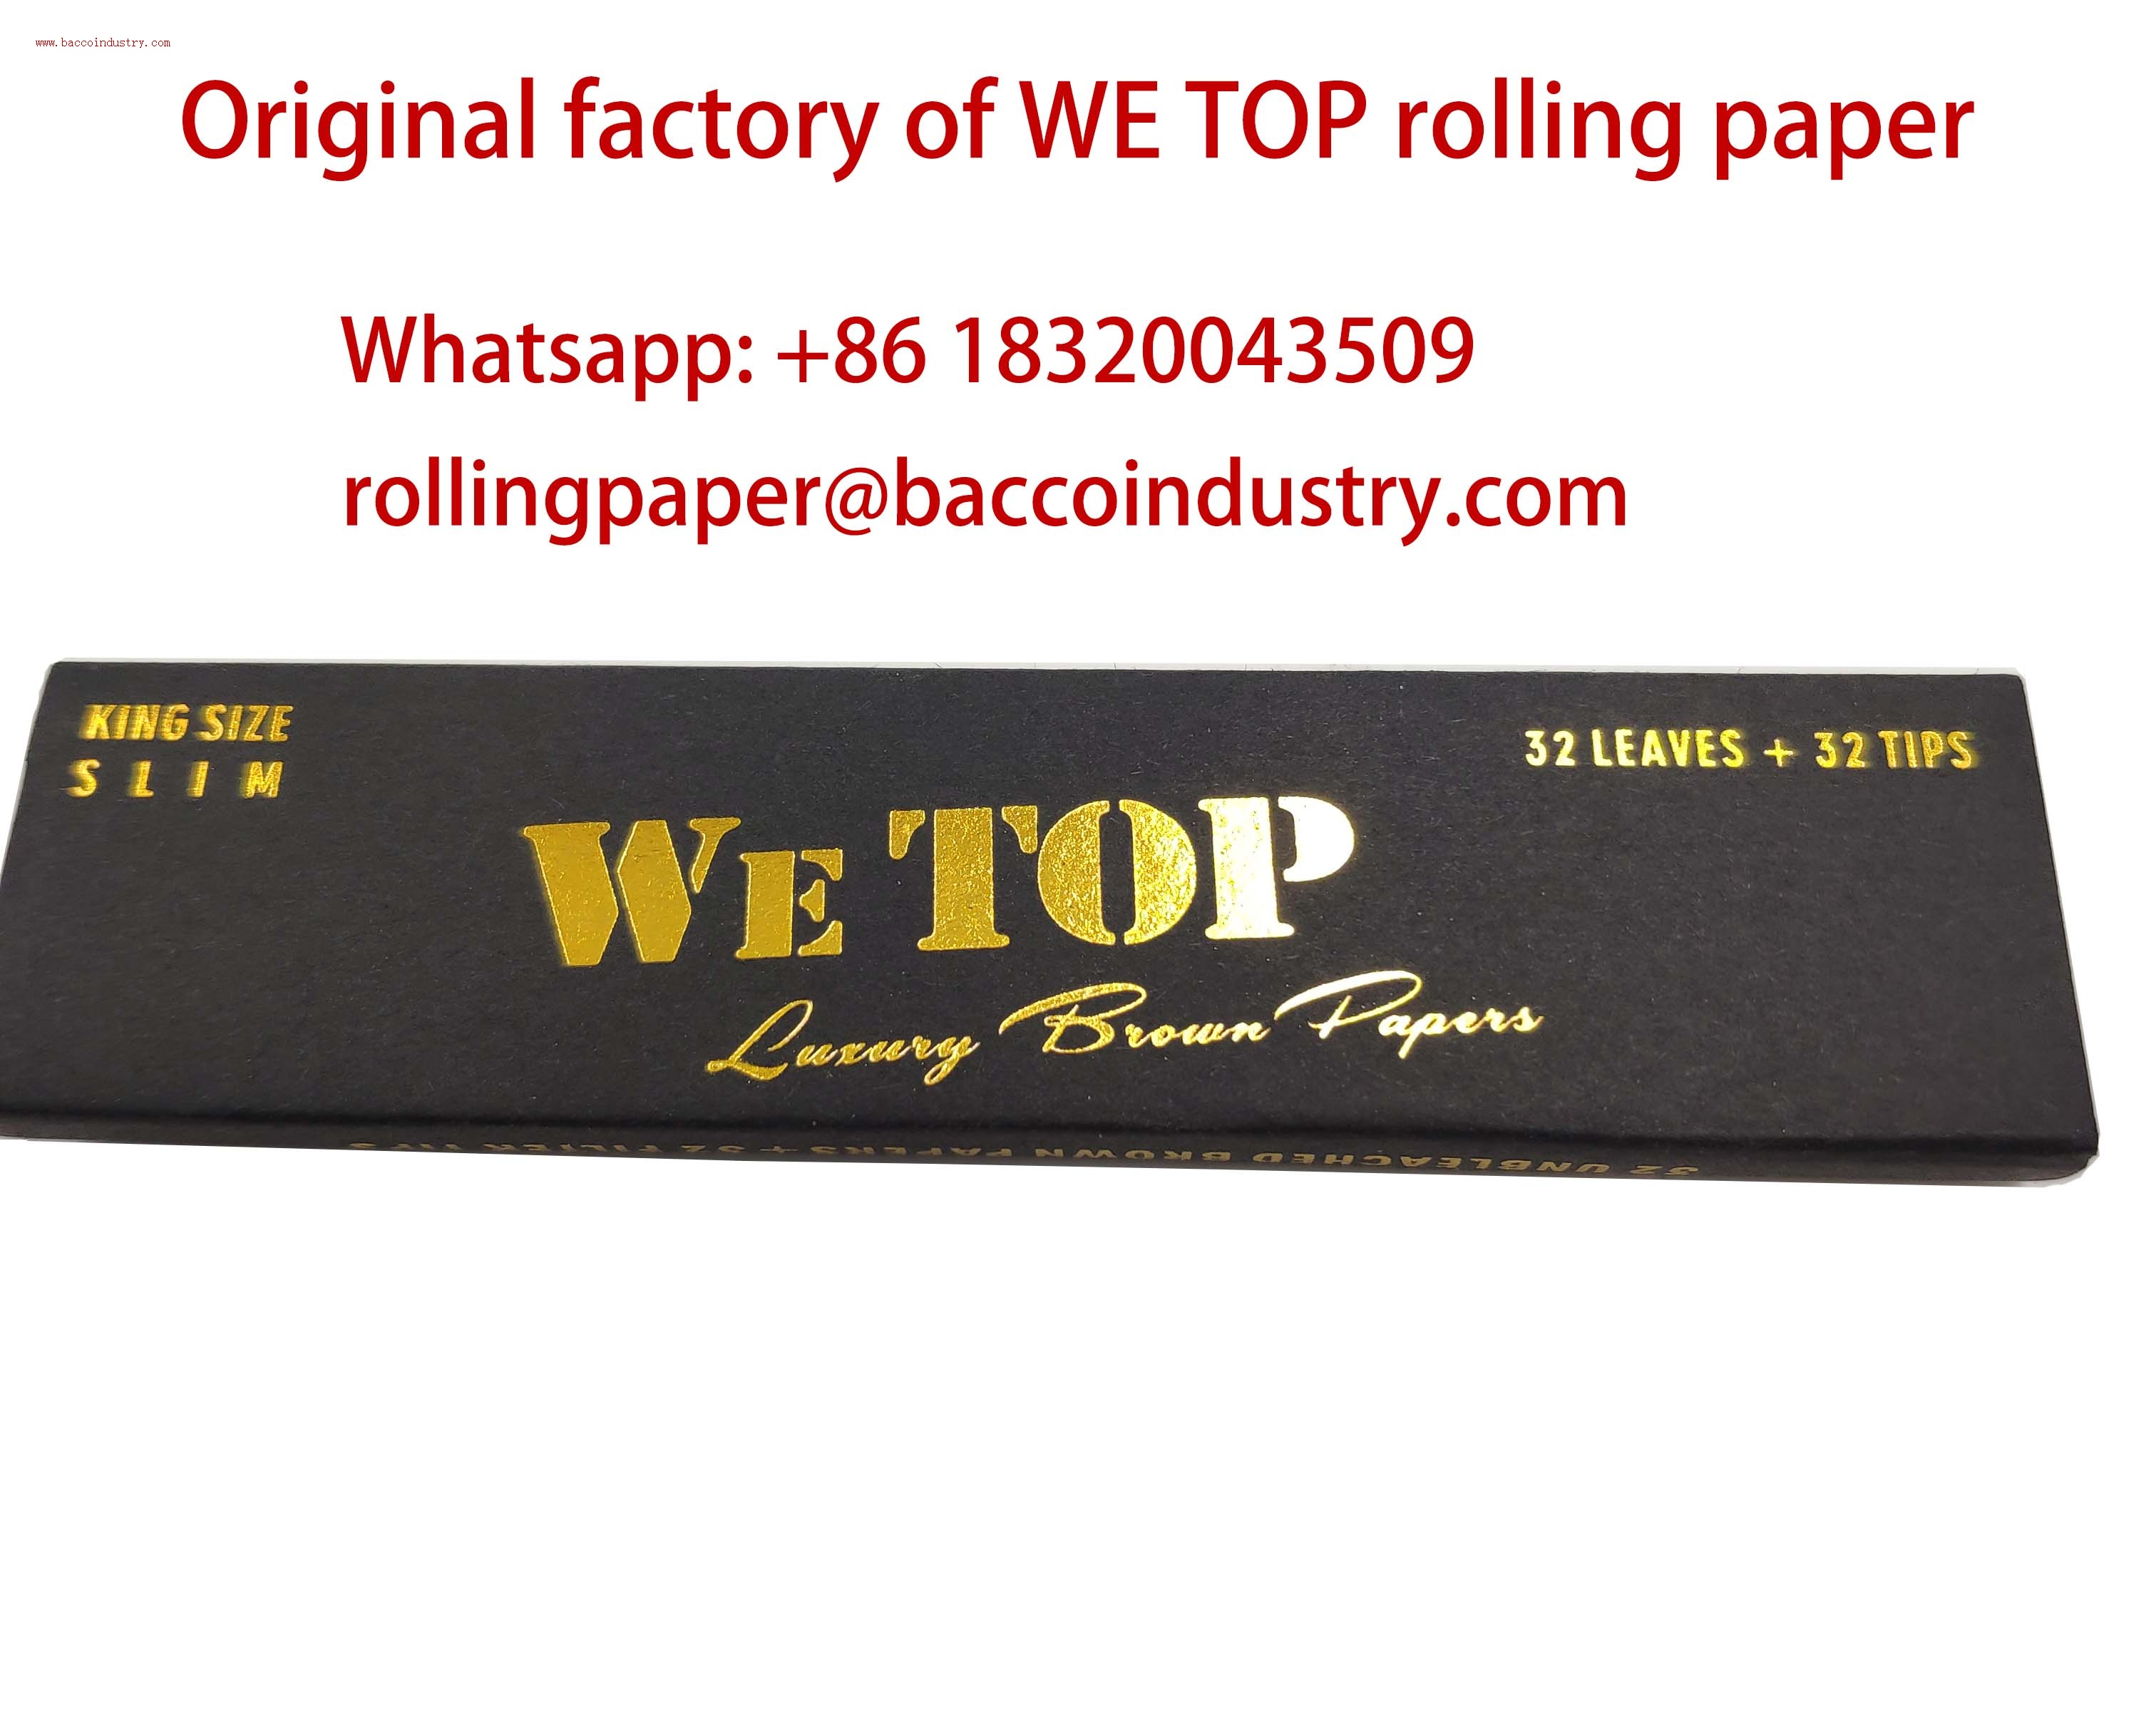 WE TOP rolling paper